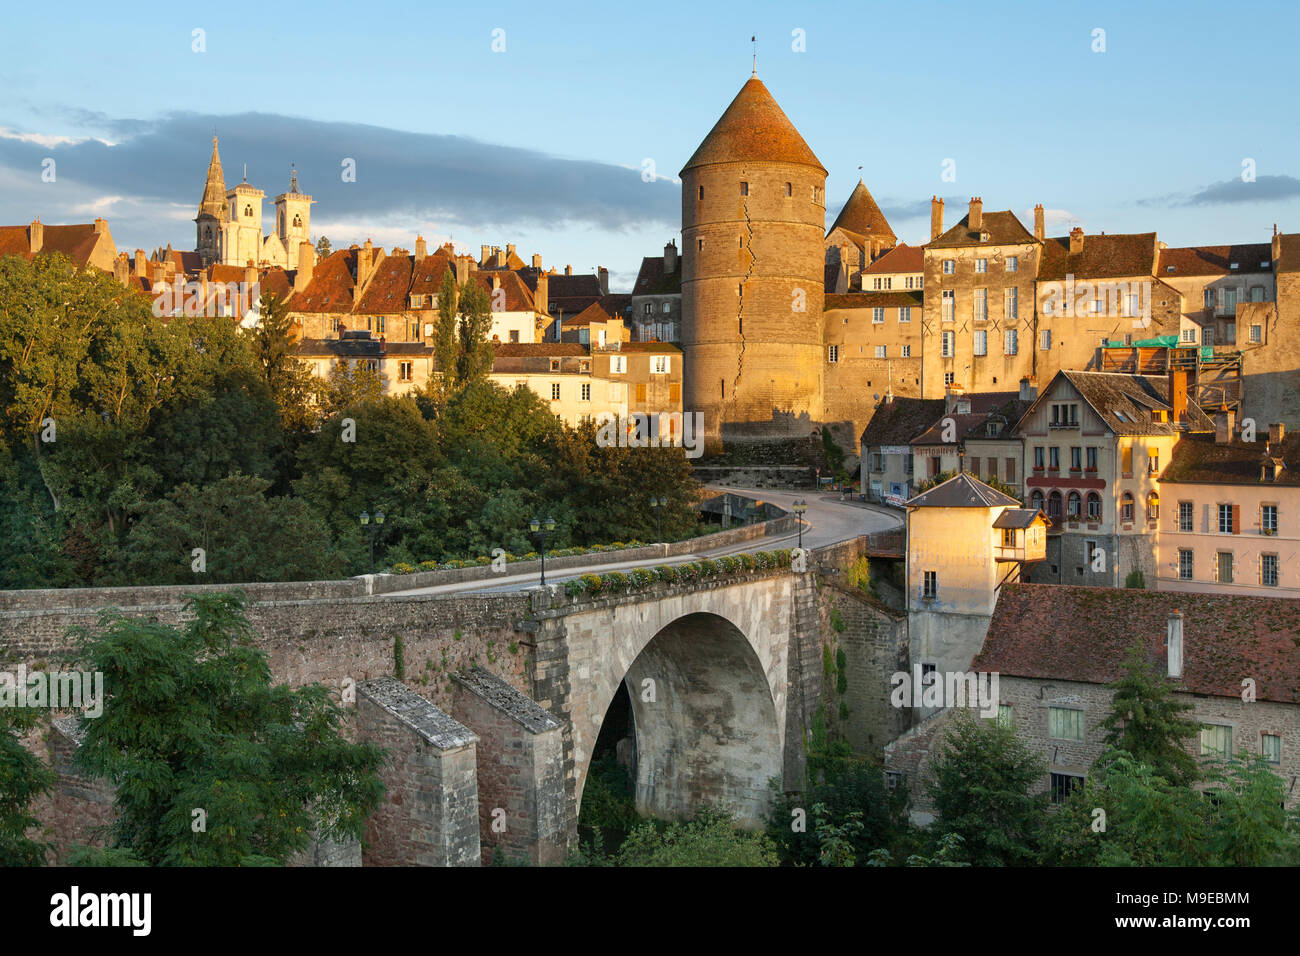 Semur-en-Auxois, Cote d'Or, Burgundy, France Stock Photo